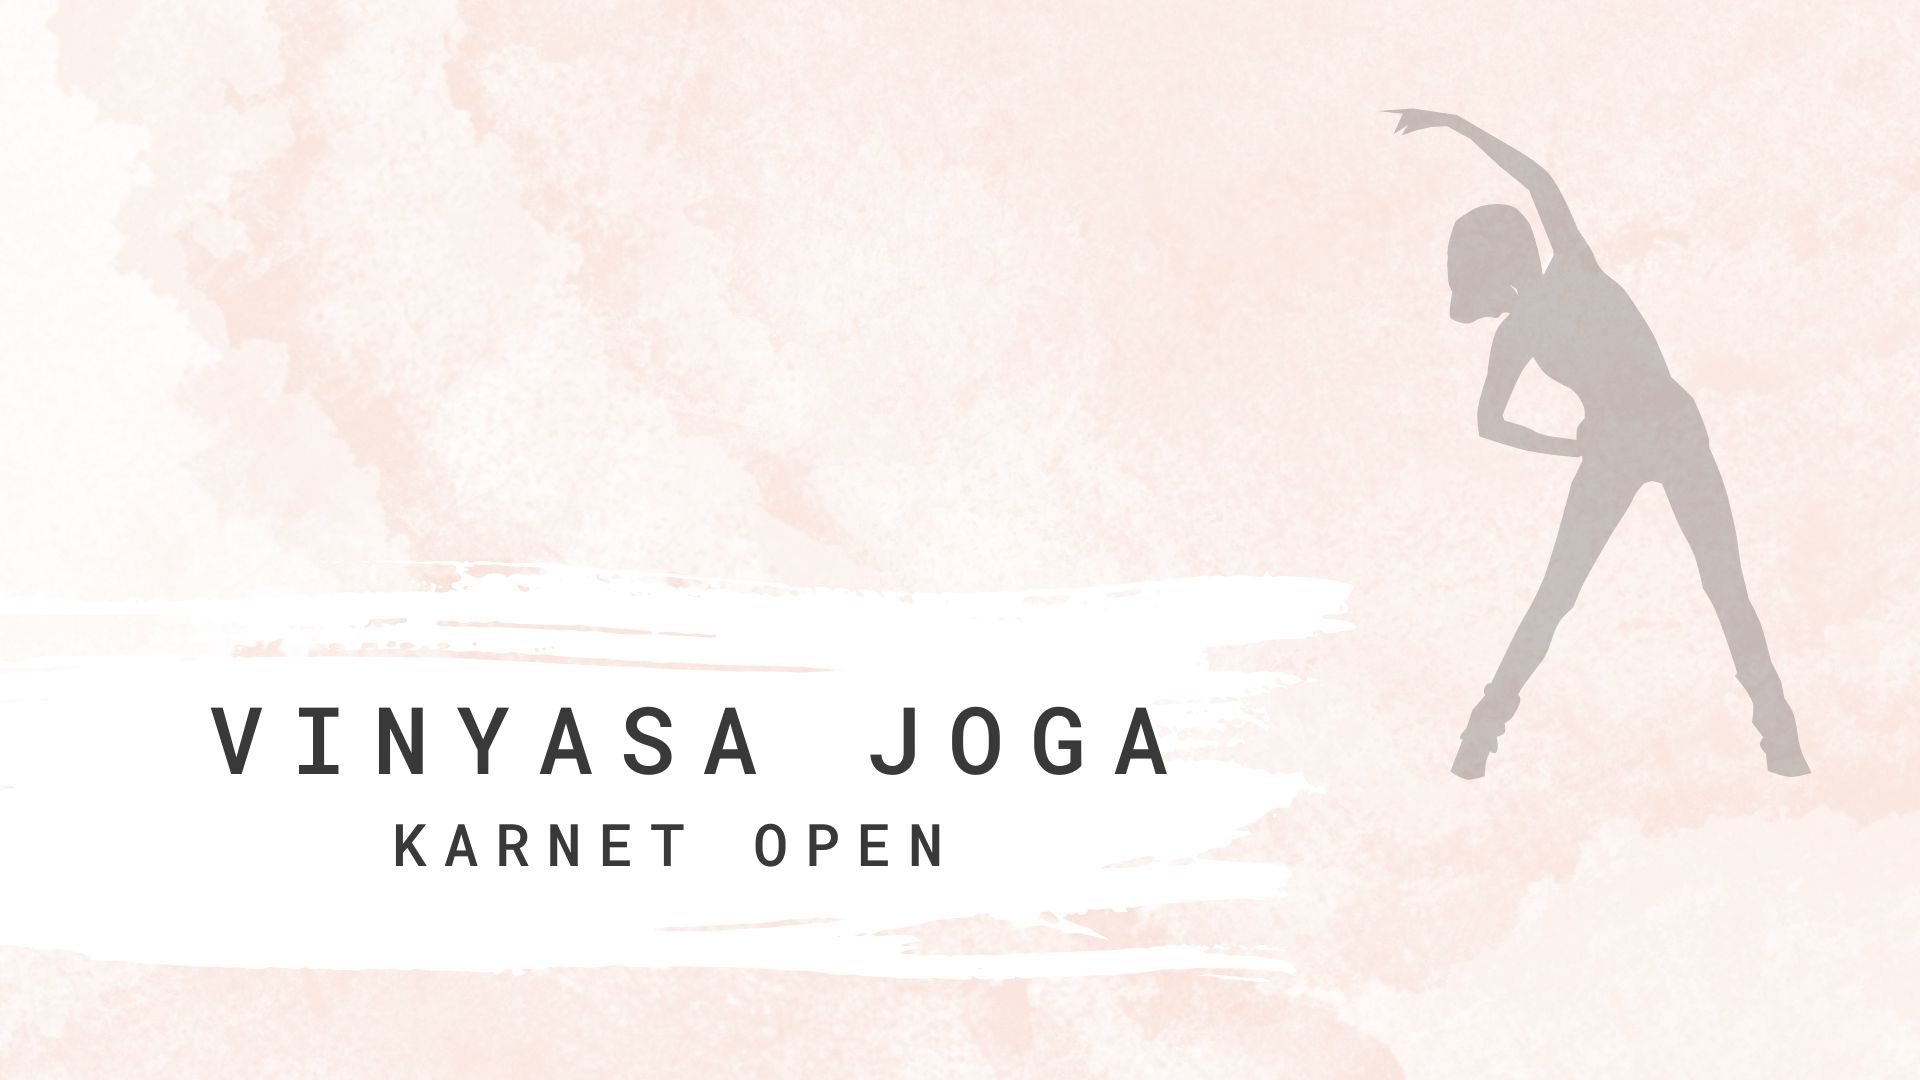 Vinyasa Joga - karnet open